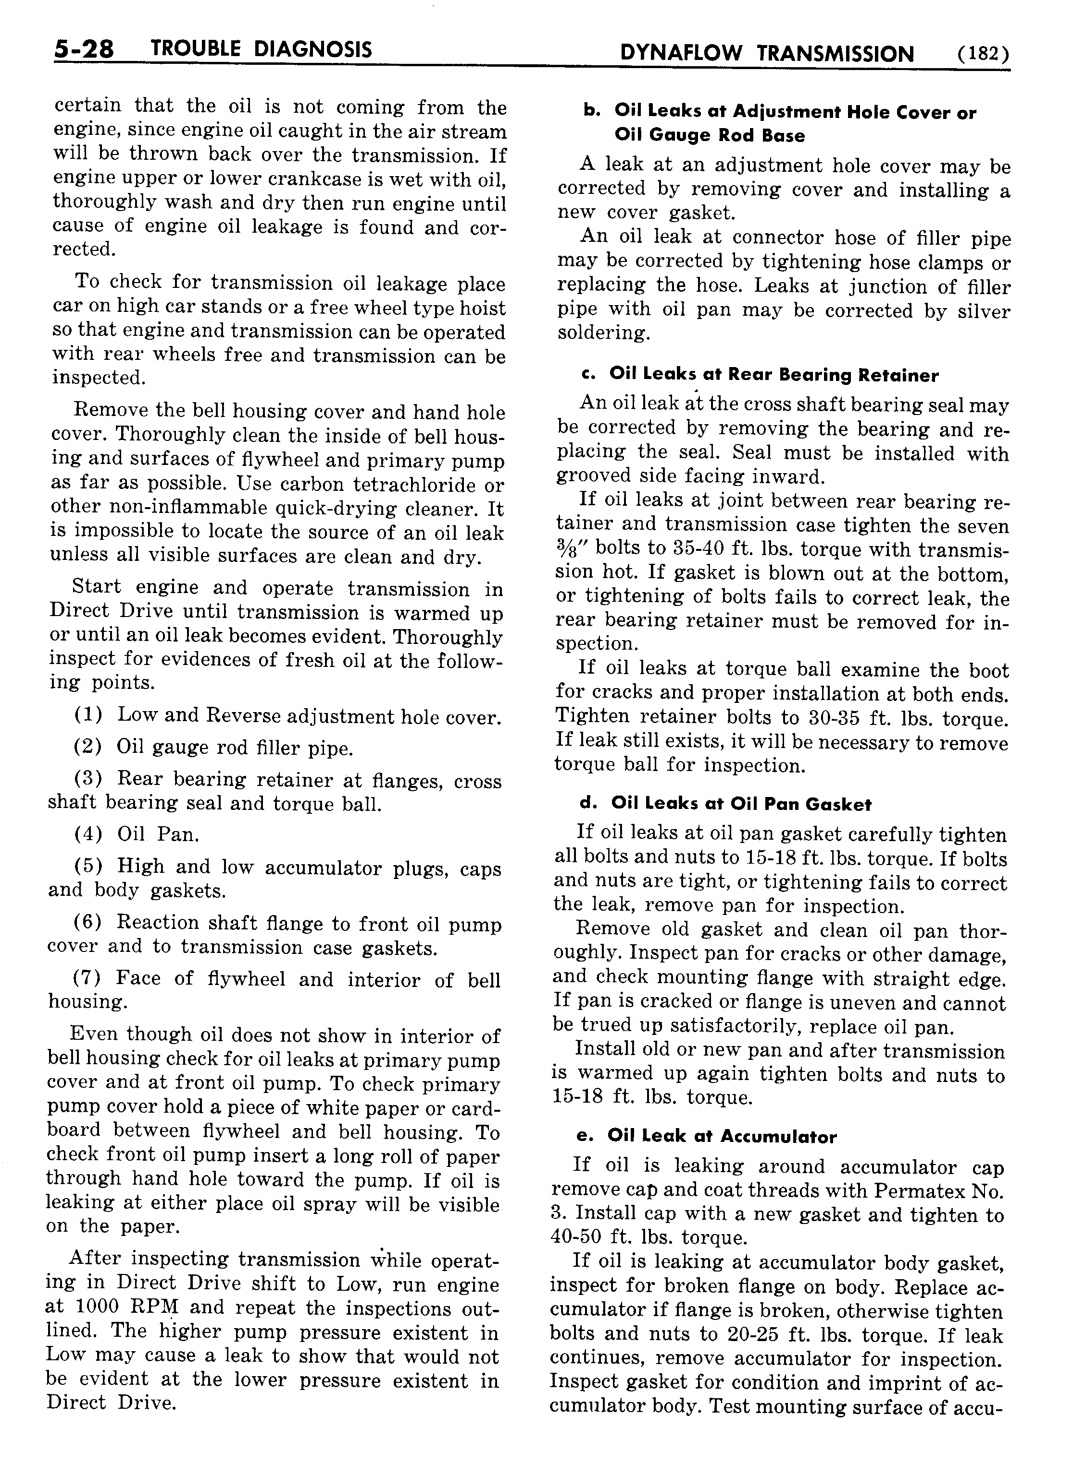 n_06 1954 Buick Shop Manual - Dynaflow-028-028.jpg